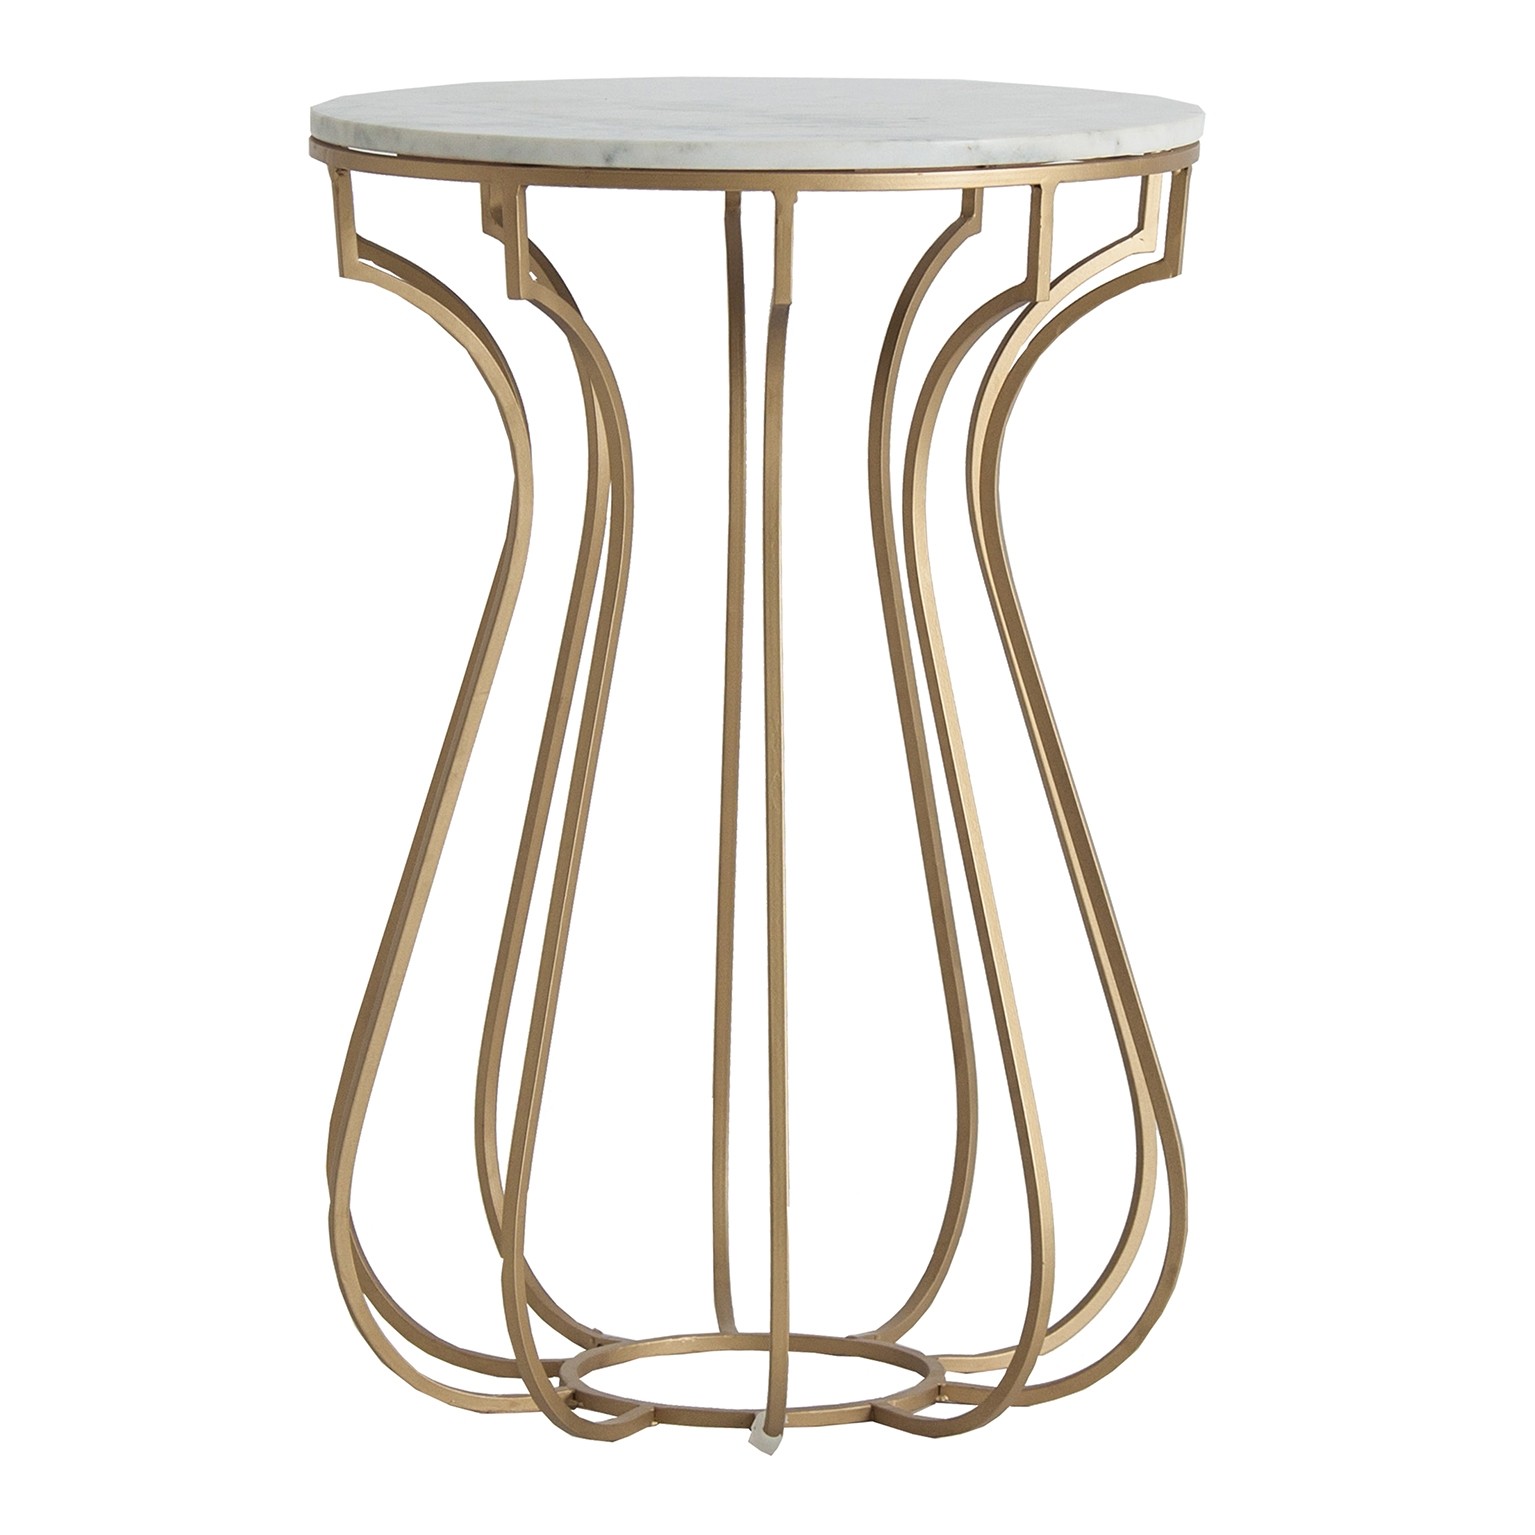 Estila Art-deco luxusní příruční stolek Tweng s kruhovou mramorovou deskou 42cm